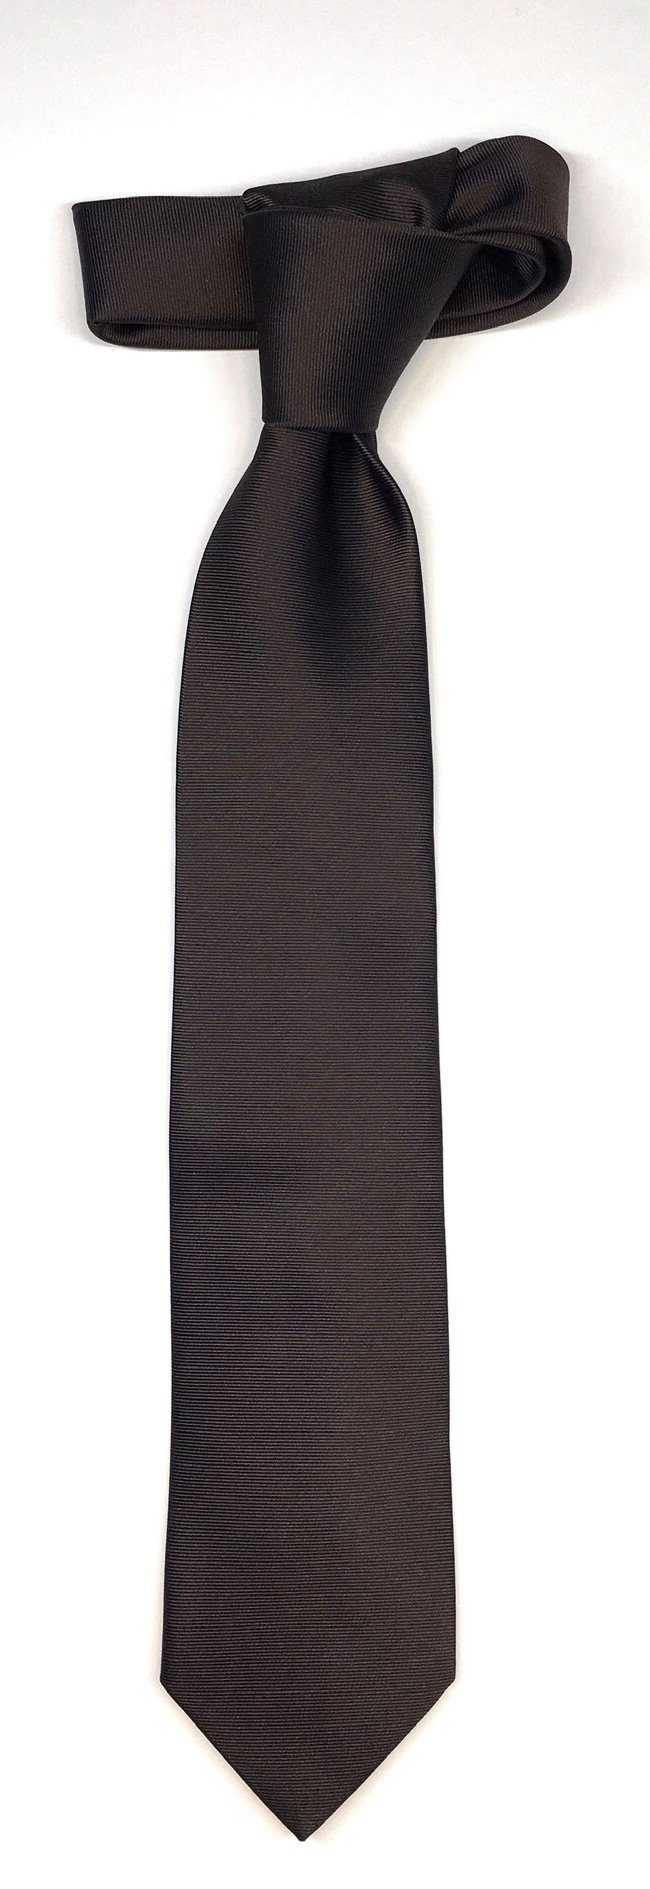 Seidenfalter Krawatte Seidenfalter 6cm Uni Krawatte Braun